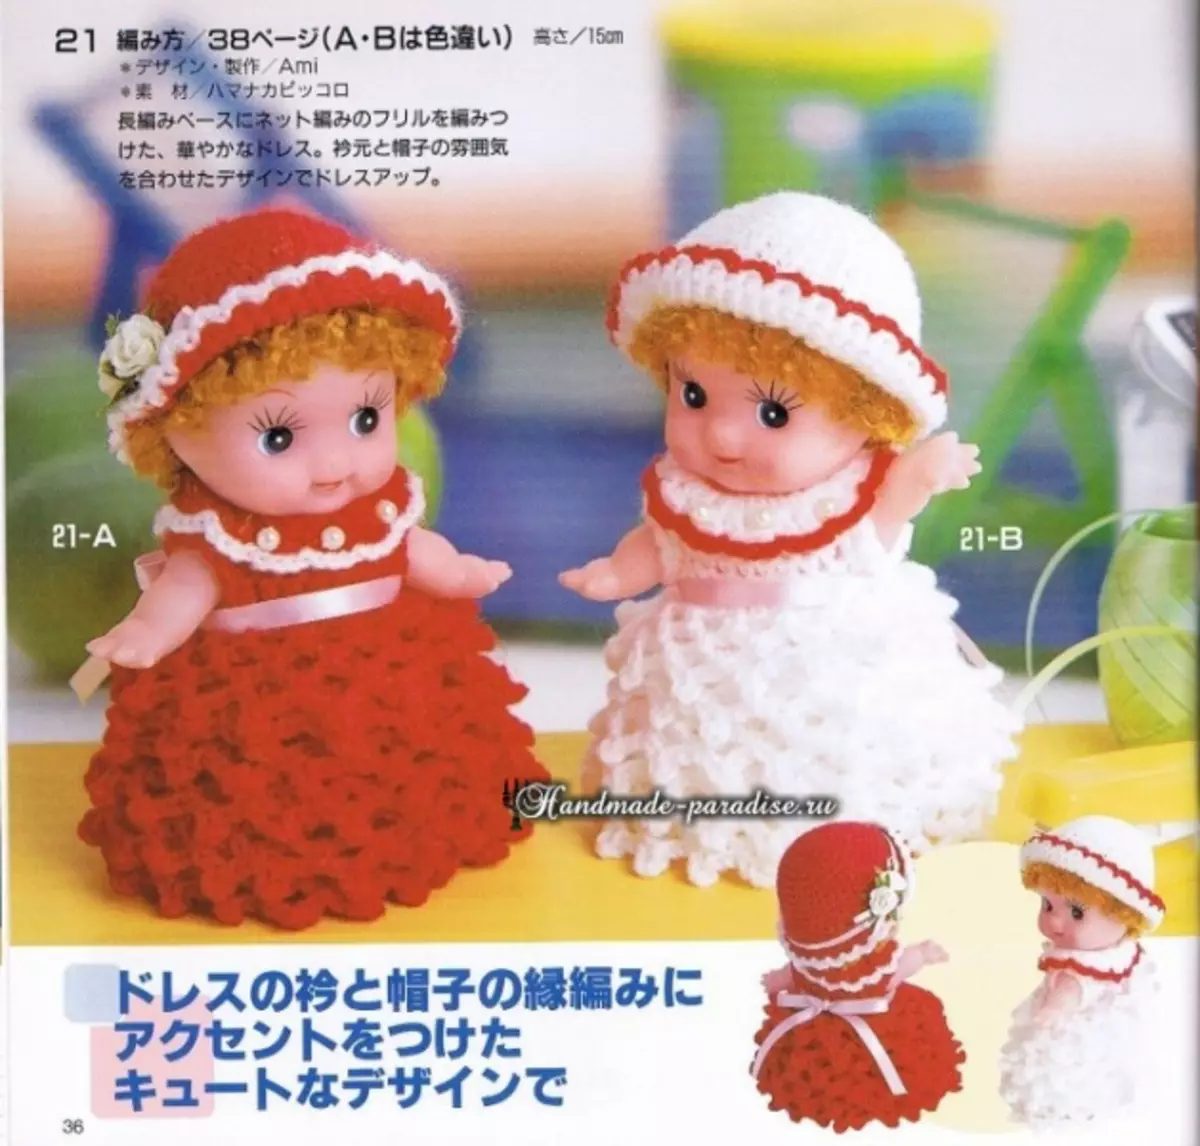 لباس بافتنی برای عروسک های کوچک. طرح ها